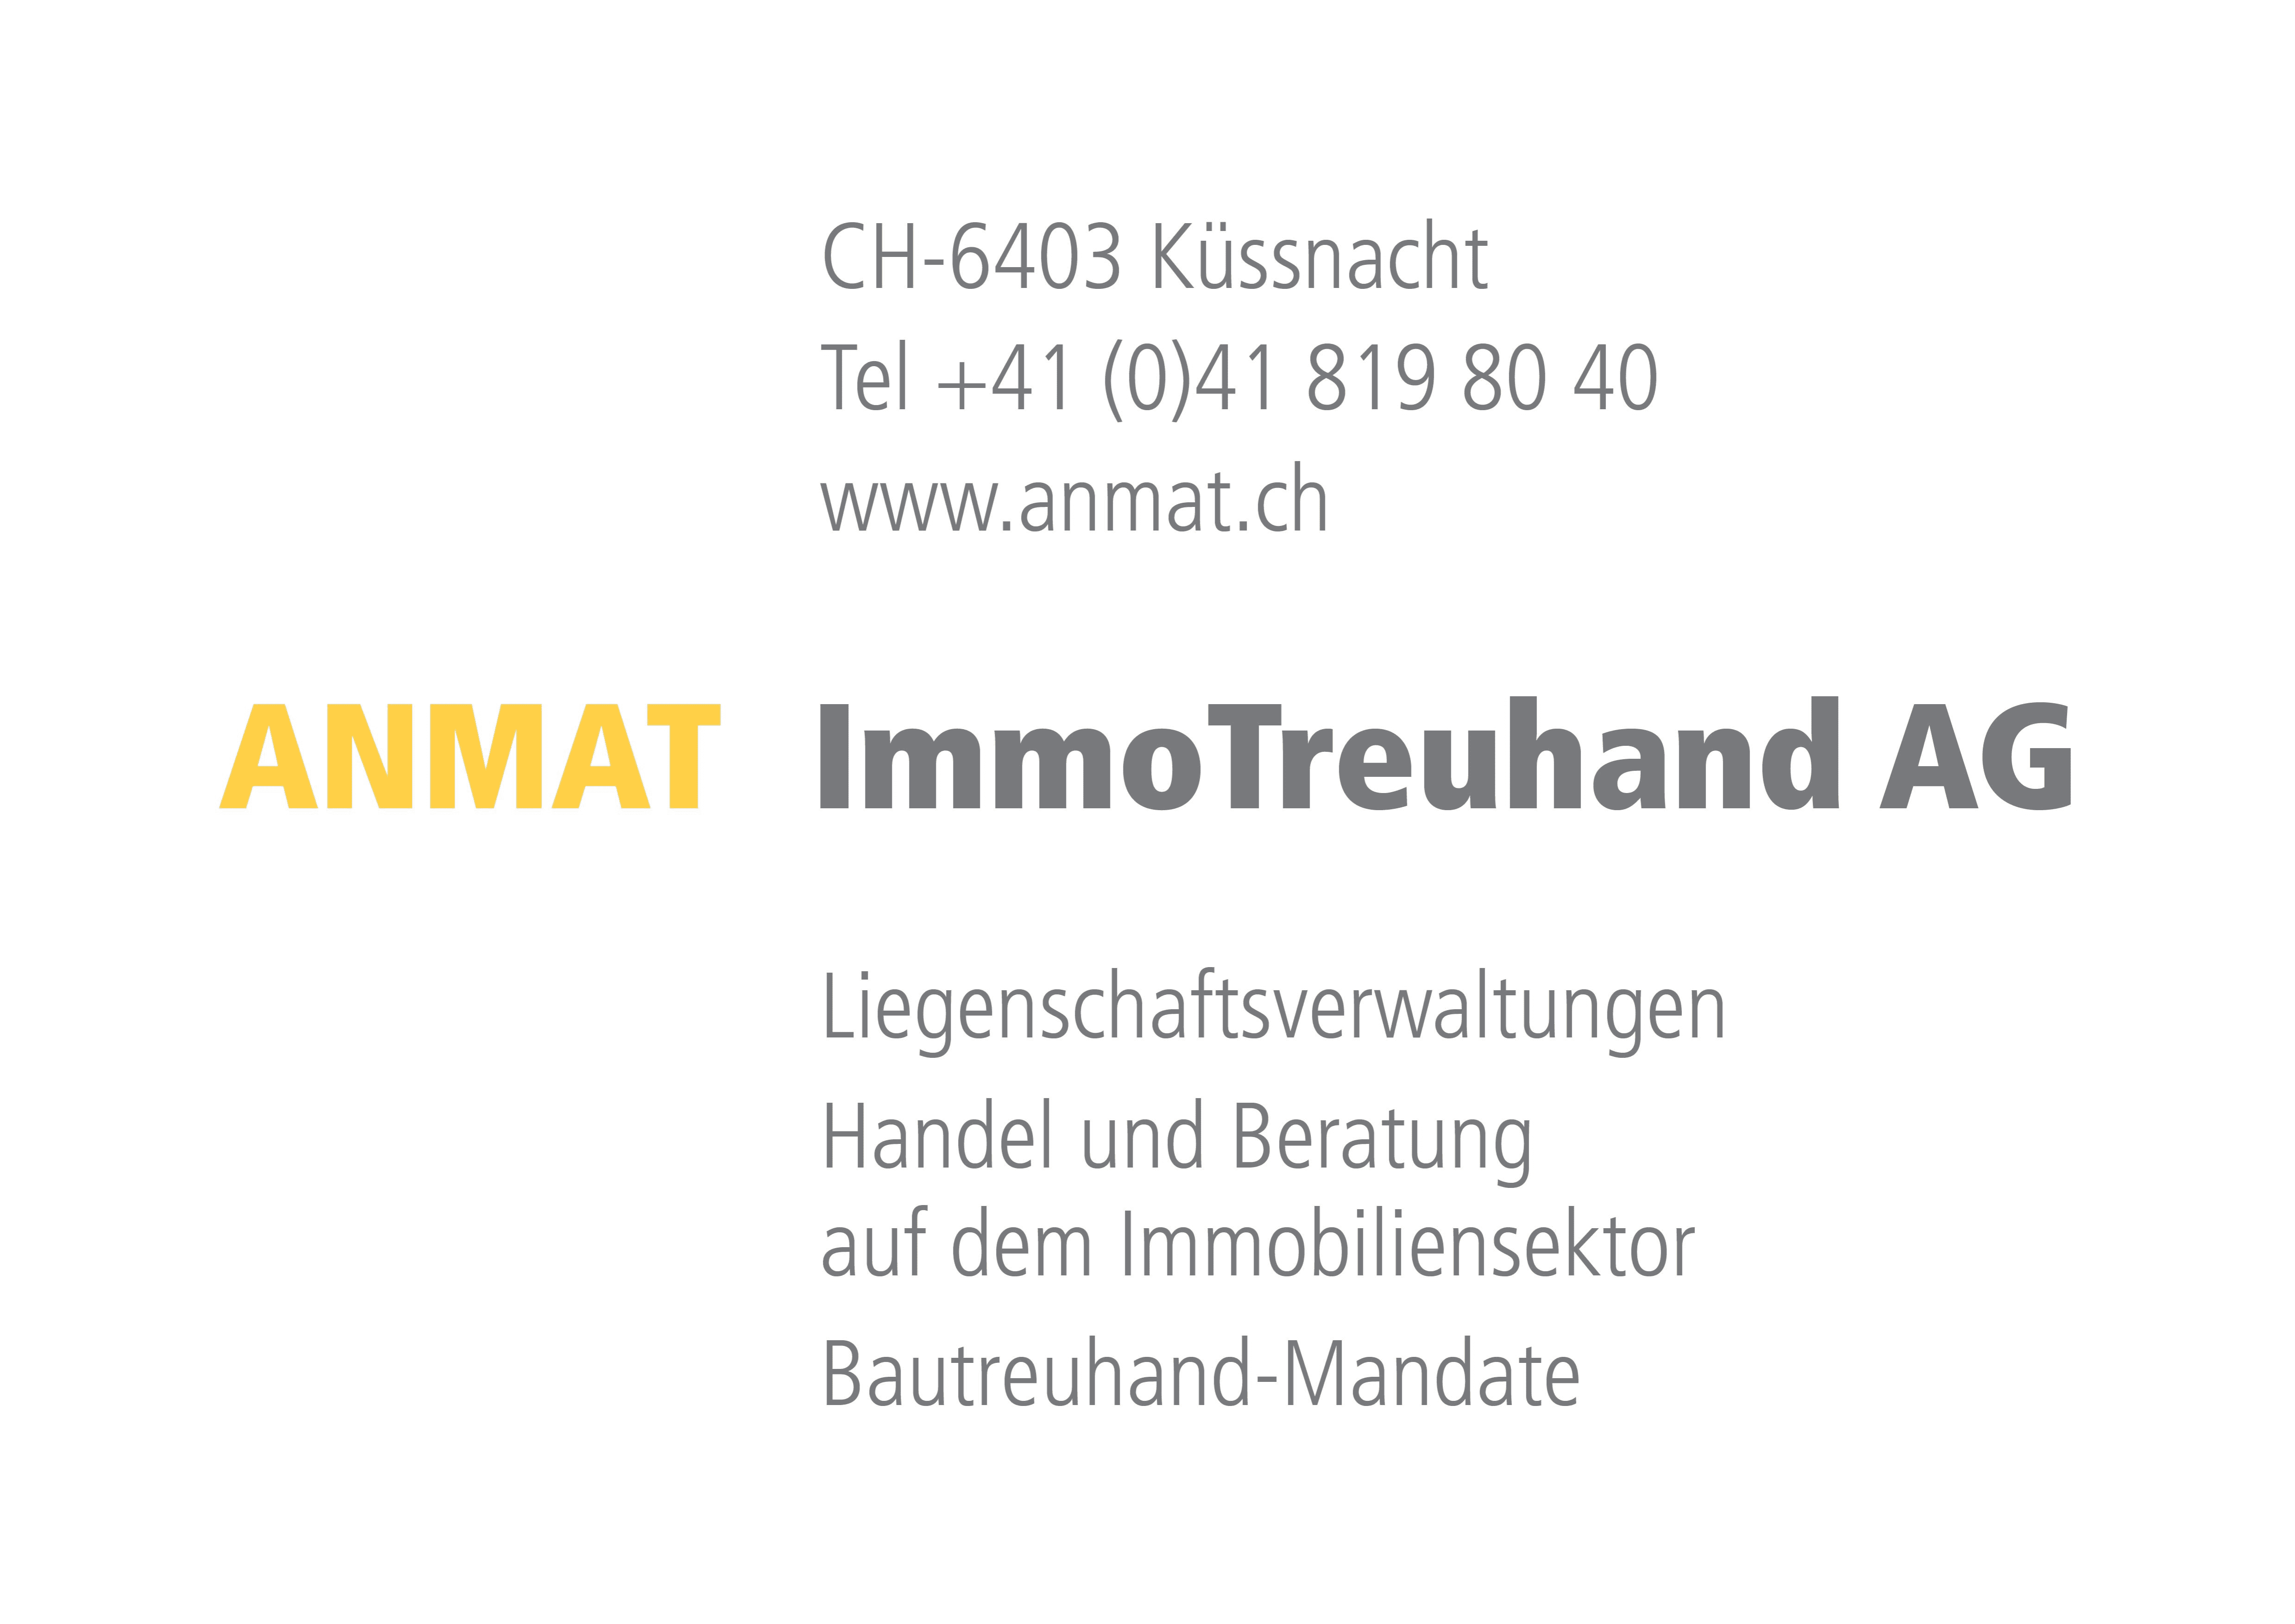 ANMAT ImmoTreuhand AG